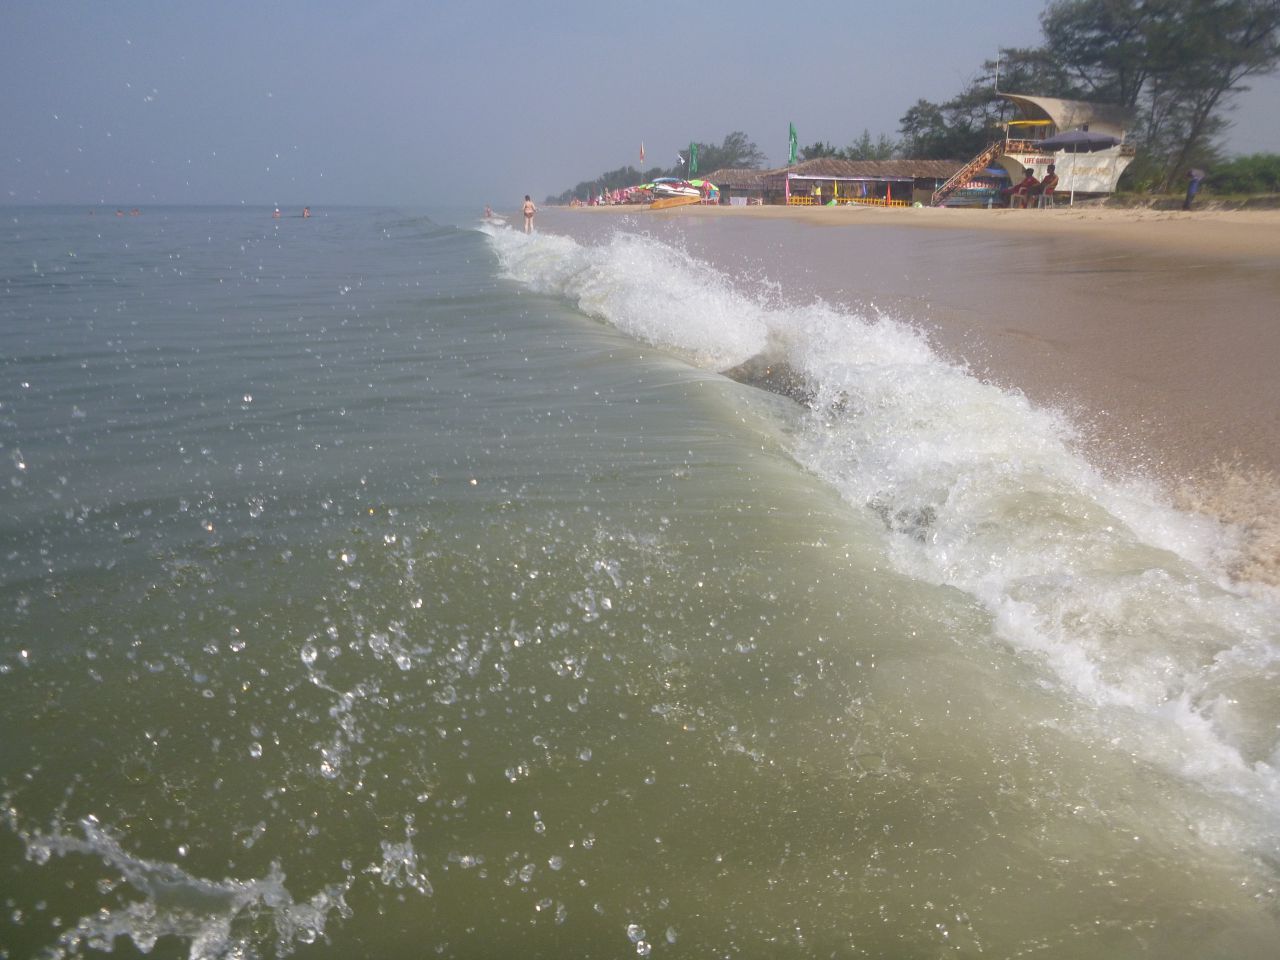 И наконец море. Как же я обожаю море! Прилив. Брызги воды на солнце... Гоа, Кавелоссим - Хампи (Виджаянагара) Индия, ноябрь 2013